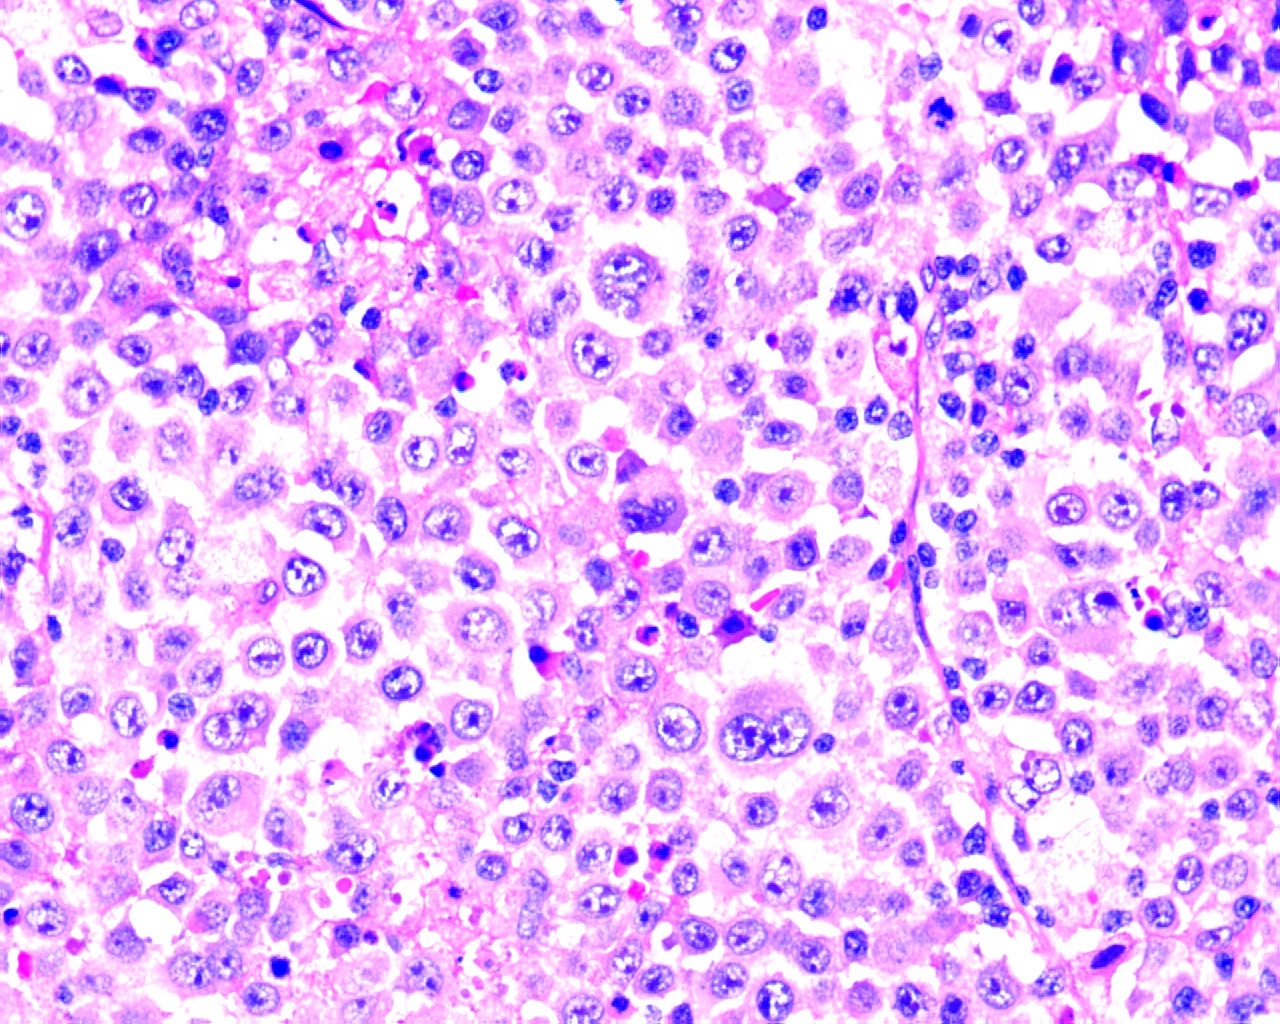 Immunoblast-like tumor cells and few plasmablasts